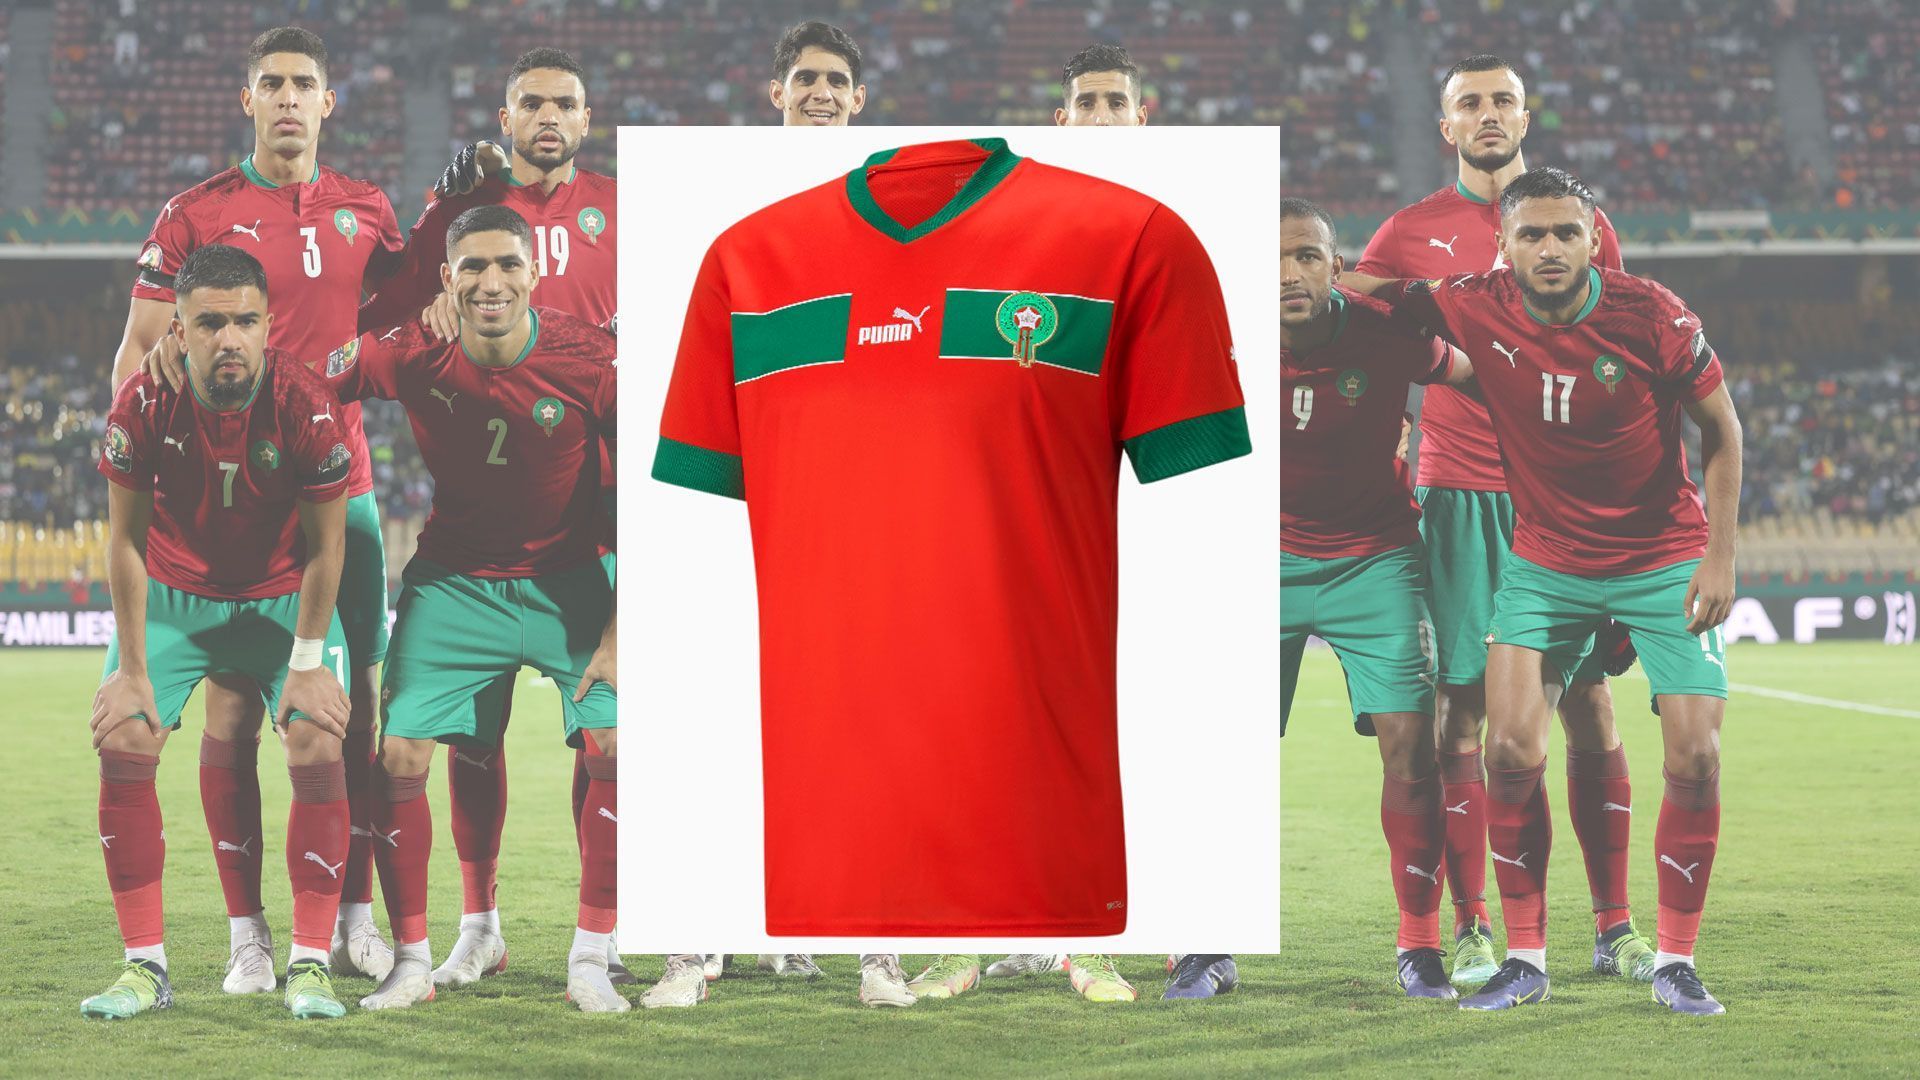 
                <strong>Marokko</strong><br>
                Beim Trikot der Marokkaner sticht neuerdings der grüne Brustring ins Auge, der einzig vom Logo des Ausrüsters unterbrochen wird. Zudem ist die Hauptfarbe Rot etwas heller als beim Vorgängermodell gehalten. 
              